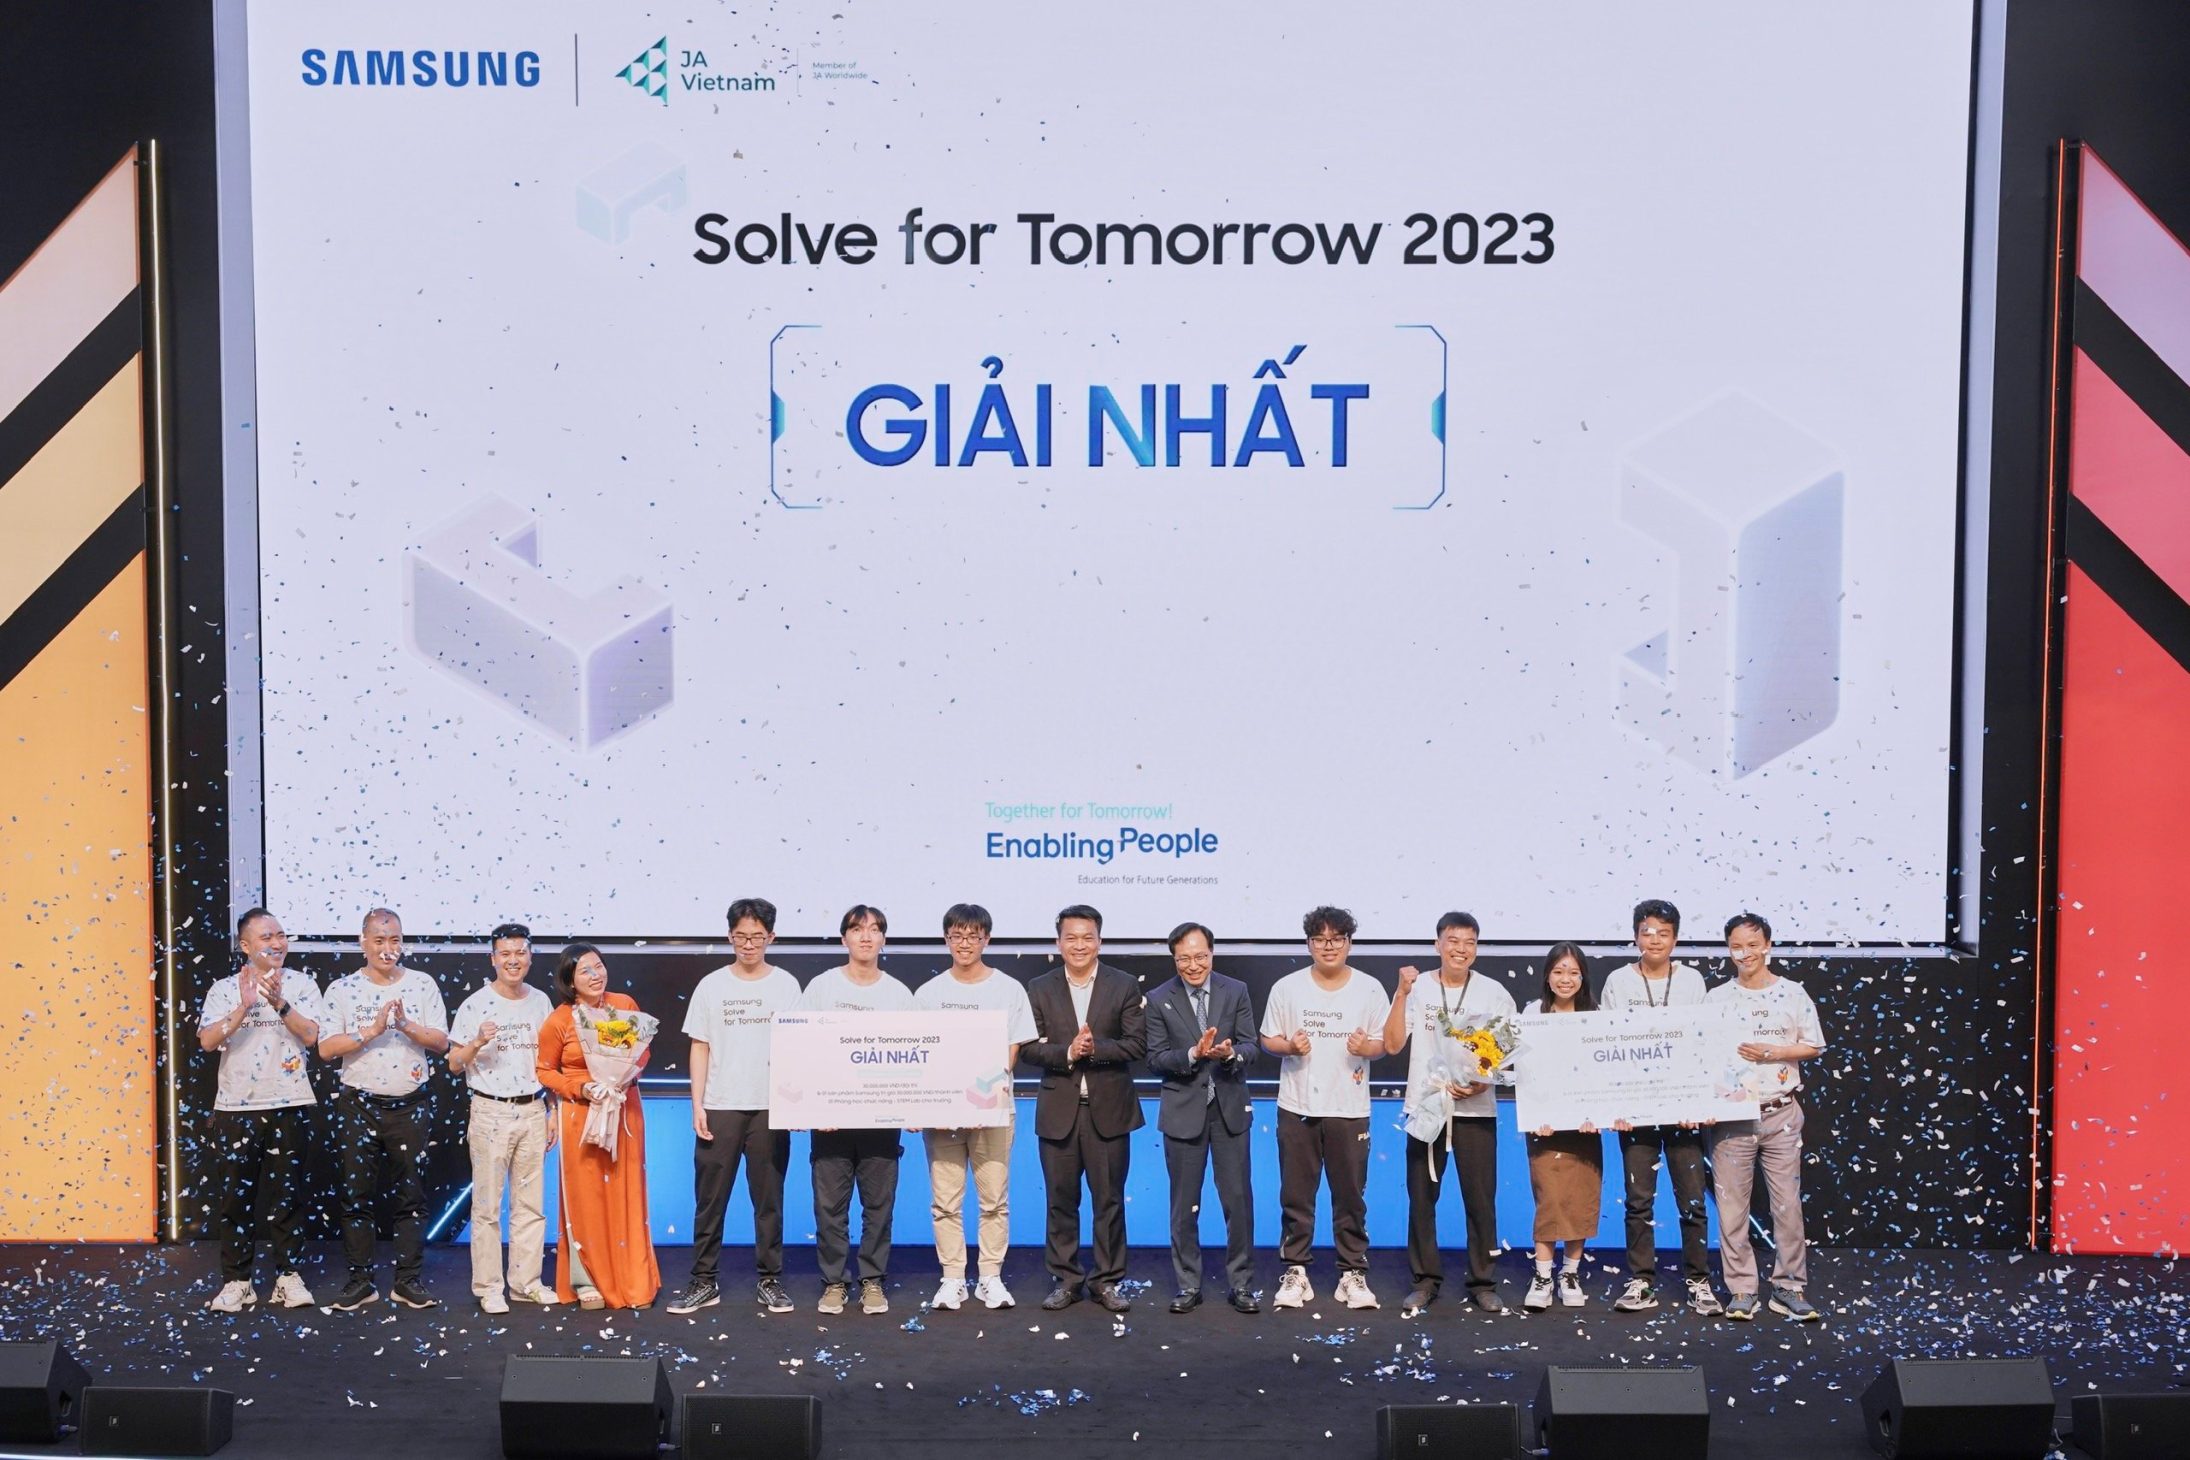 Học sinh sáng chế robot kiểm soát đất, giành tiền tỷ tại Samsung Solve for Tomorrow 2023 - Quan quan cuoc thi Solve for Tomorrow 2023 chinh thuc lo dien